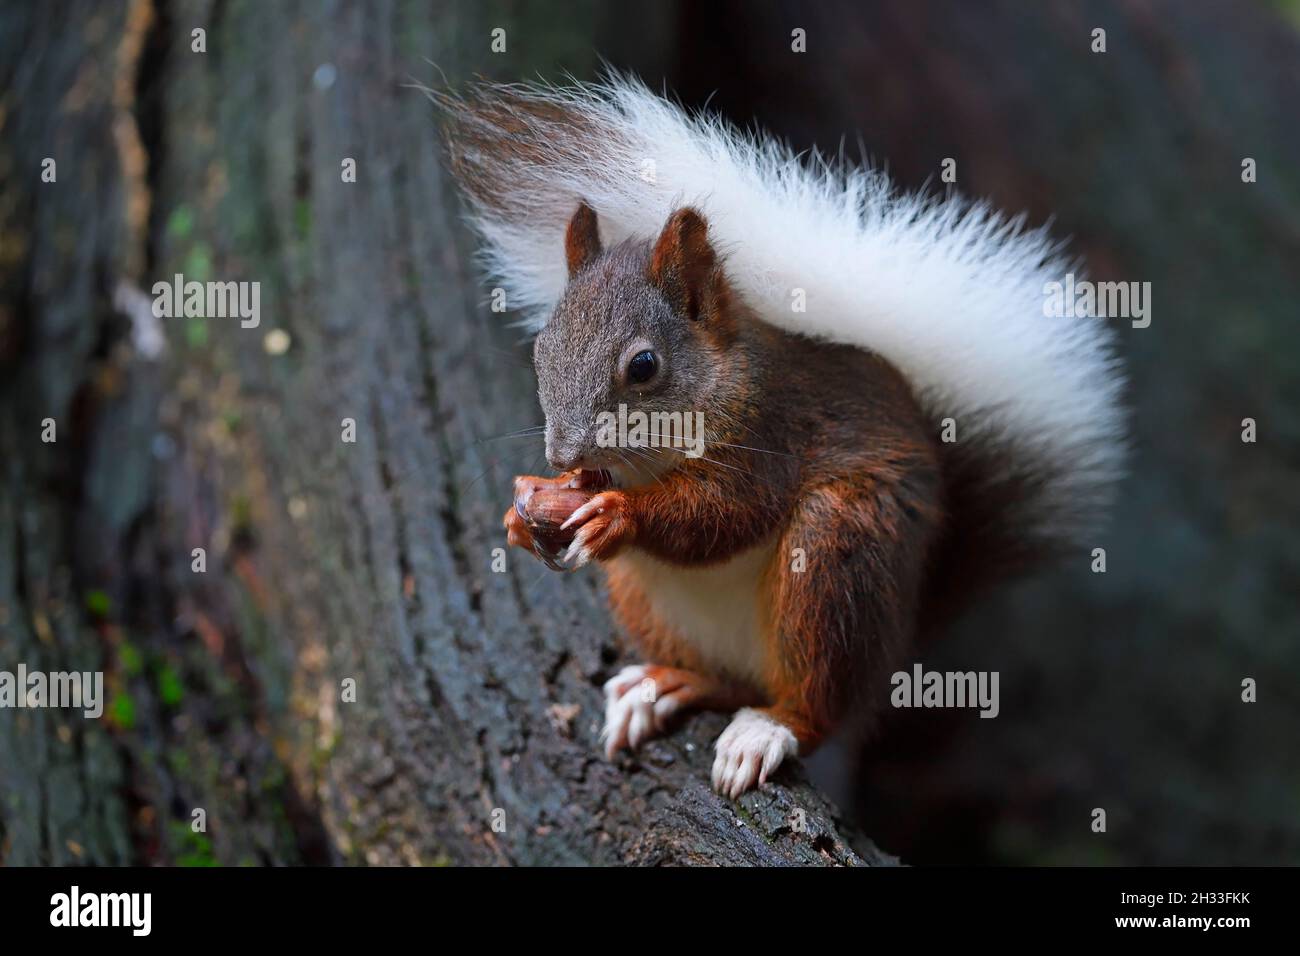 Eichhörnchen (Sciurus vulgaris), mit weissem Schwanz, Albinismuscherscheinung, frisst Nuss, Brandebourg,Allemagne Banque D'Images